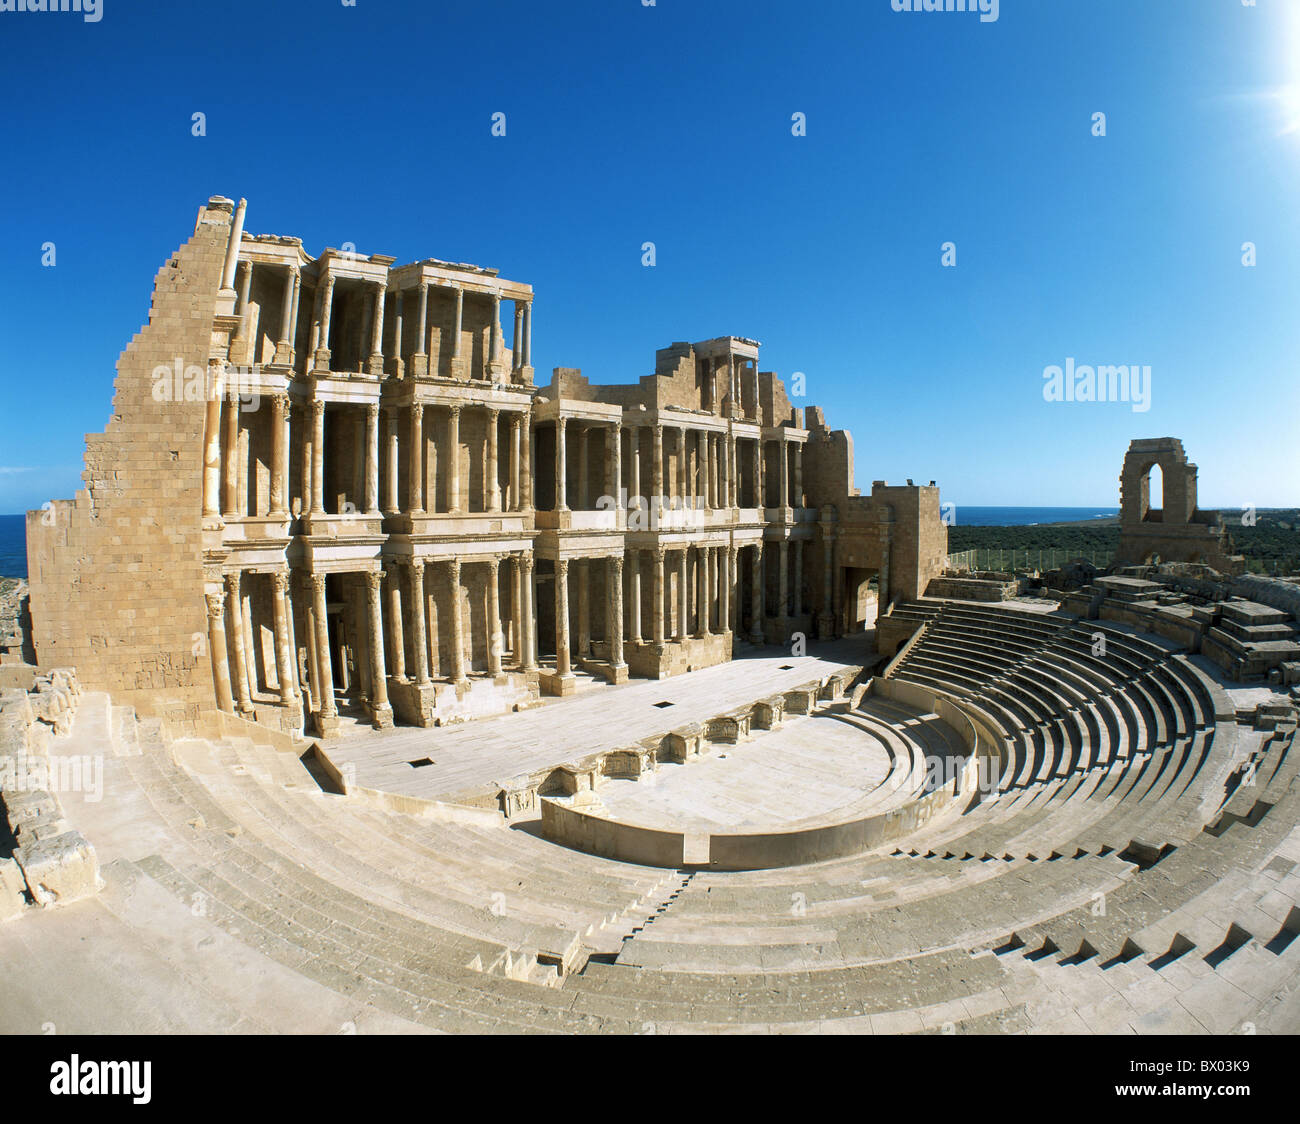 Un monde ancien antiquité romaine vestiges romains historiques Libye Sabratha theatre culturel mondial de l'UNESCO Banque D'Images